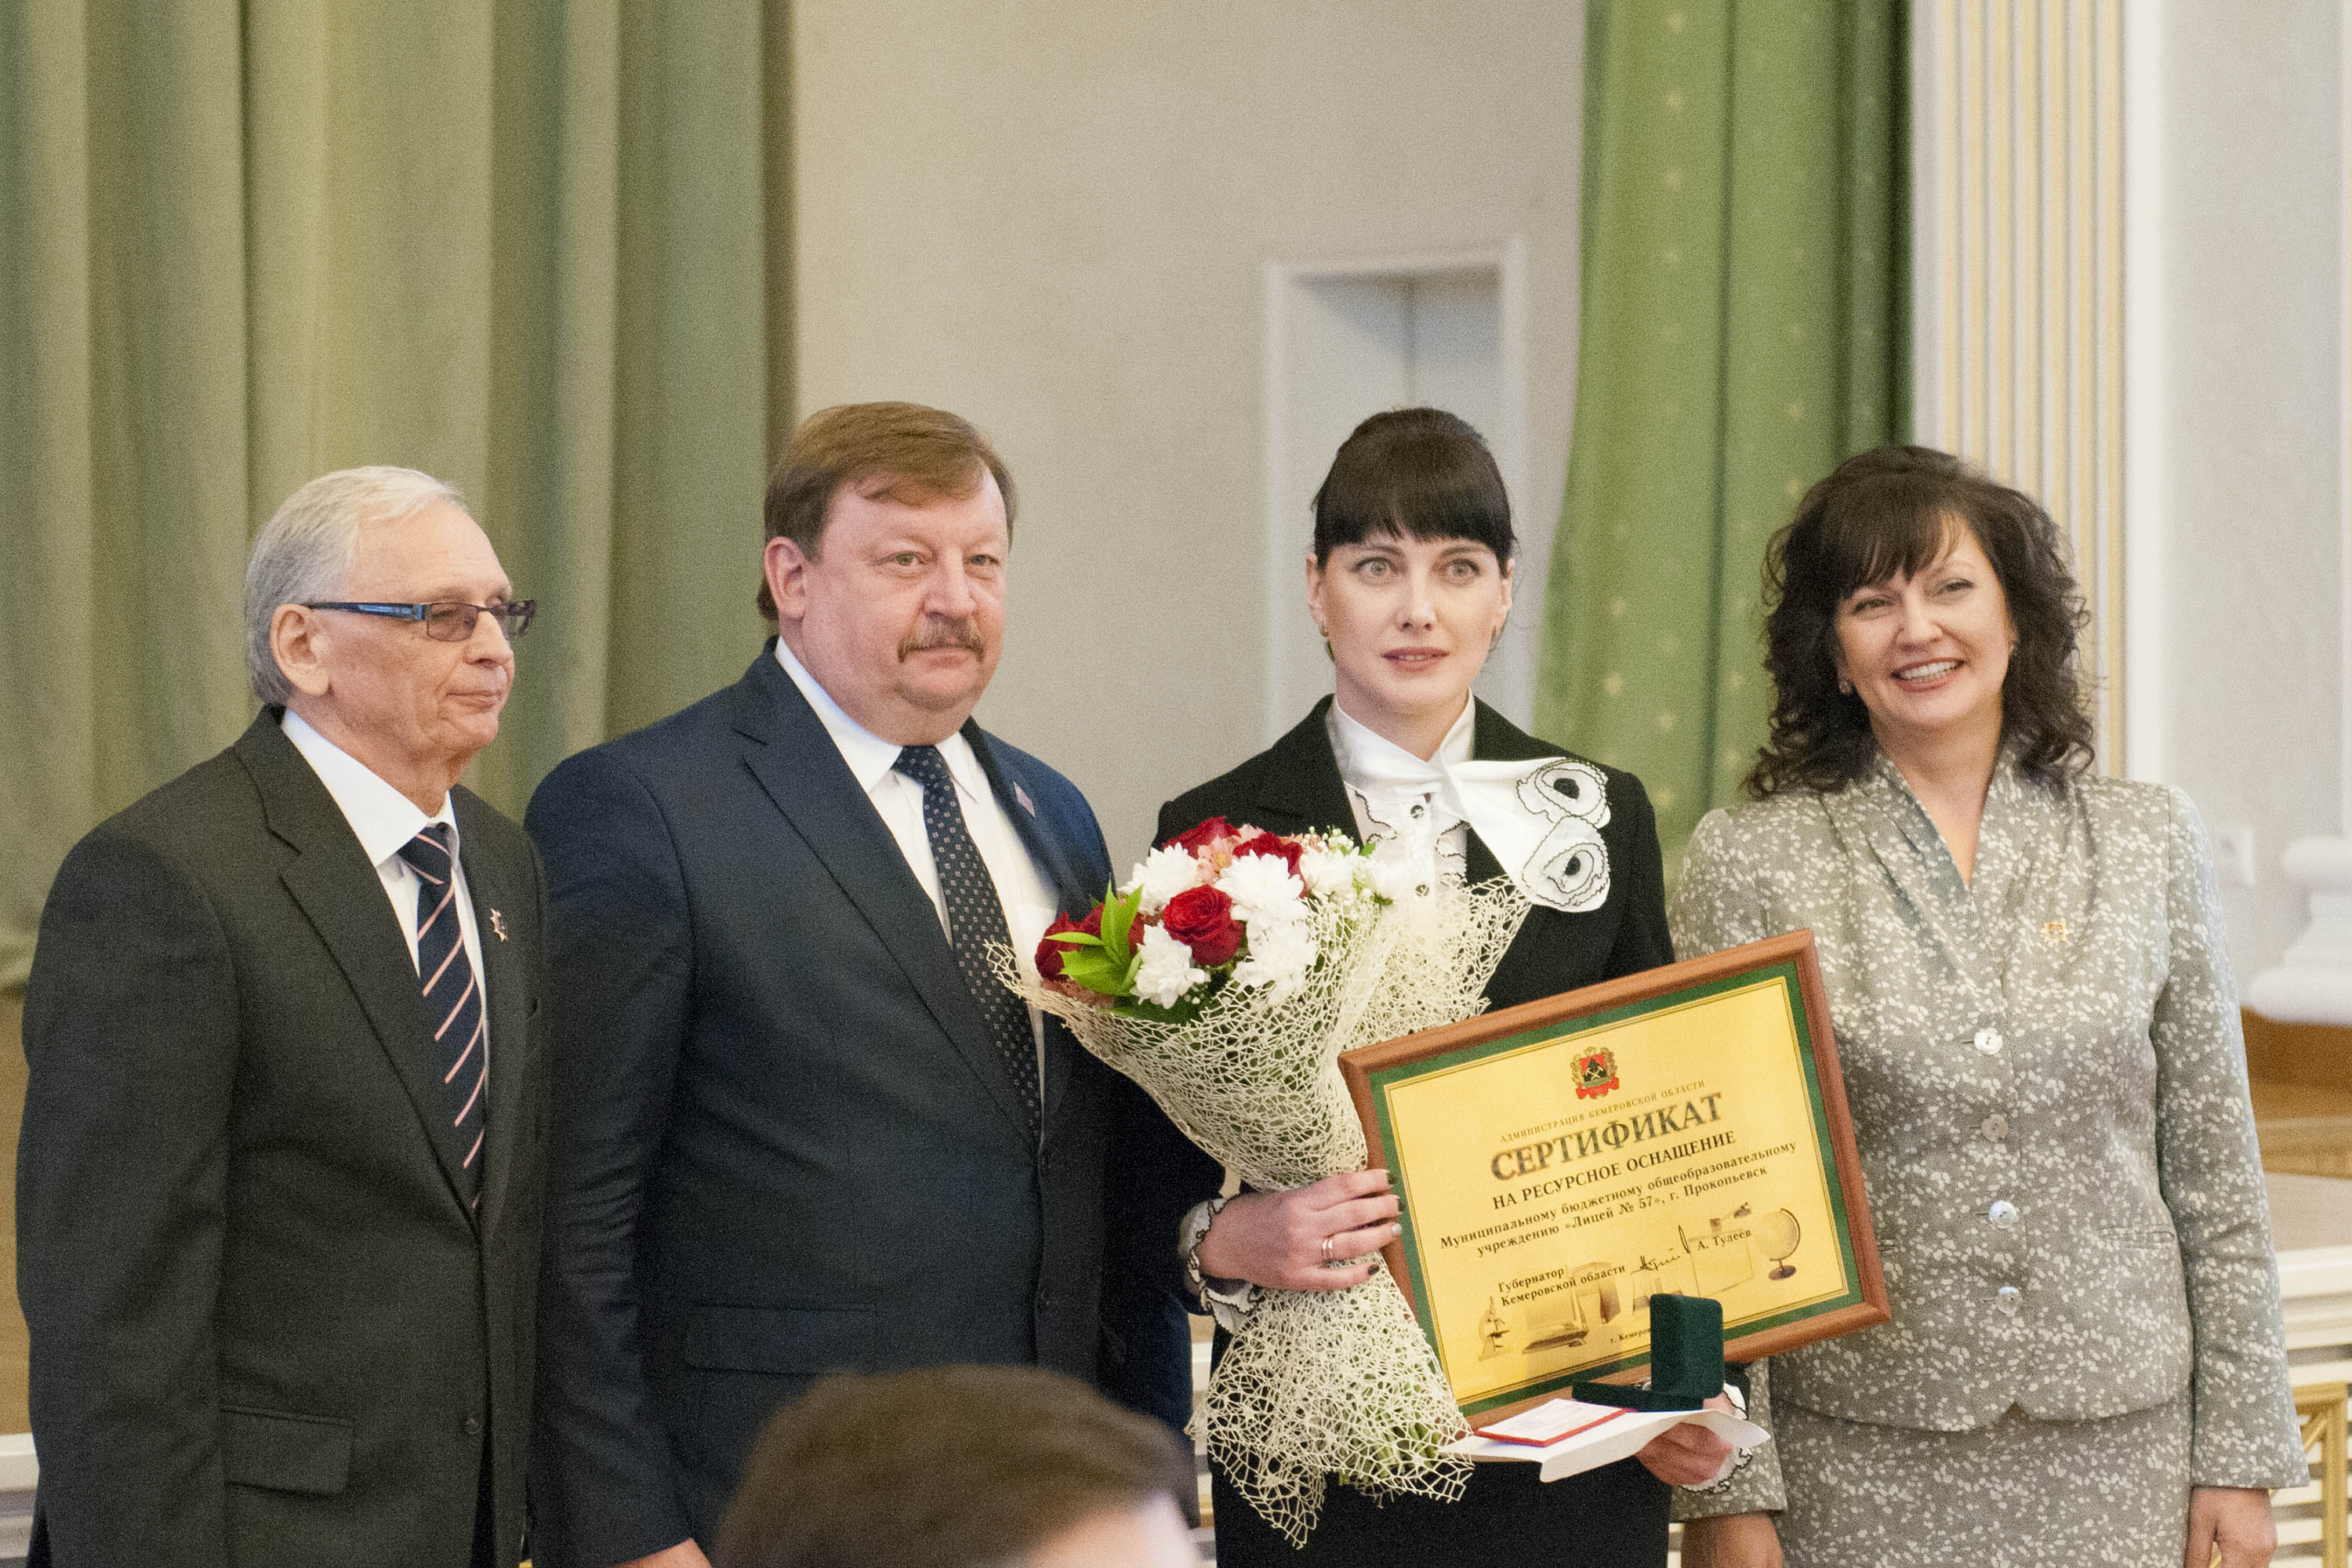 В Кузбассе состоялся торжественный прием, посвященный подведению итогов областных конкурсов педагогического мастерства